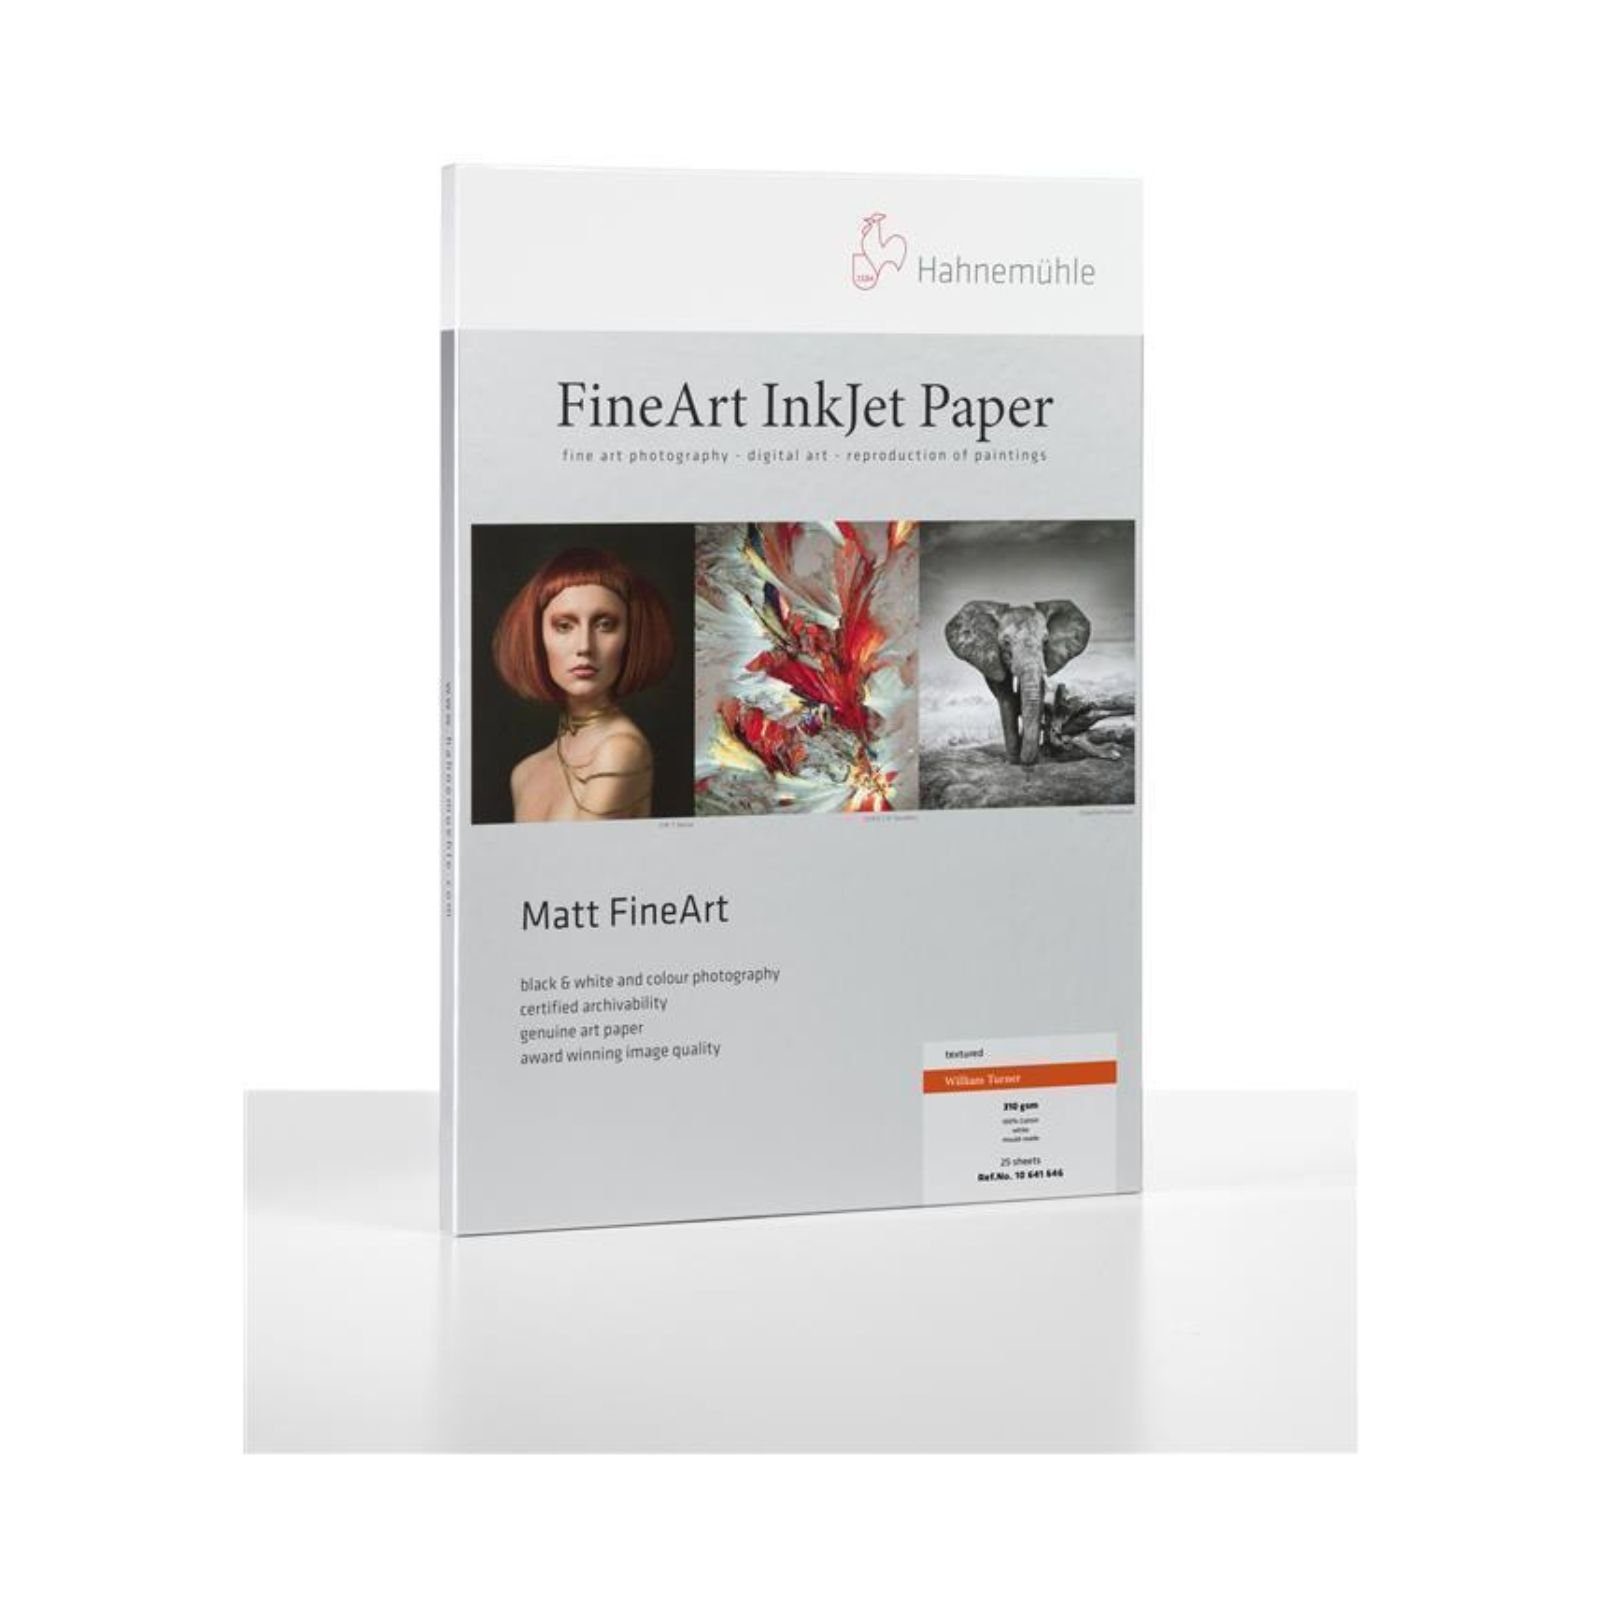 FineArt g/m² William Inkjet-Papier - 190 25 Blatt A3+ DIN Fotopapier - Turner Hahnemühle -